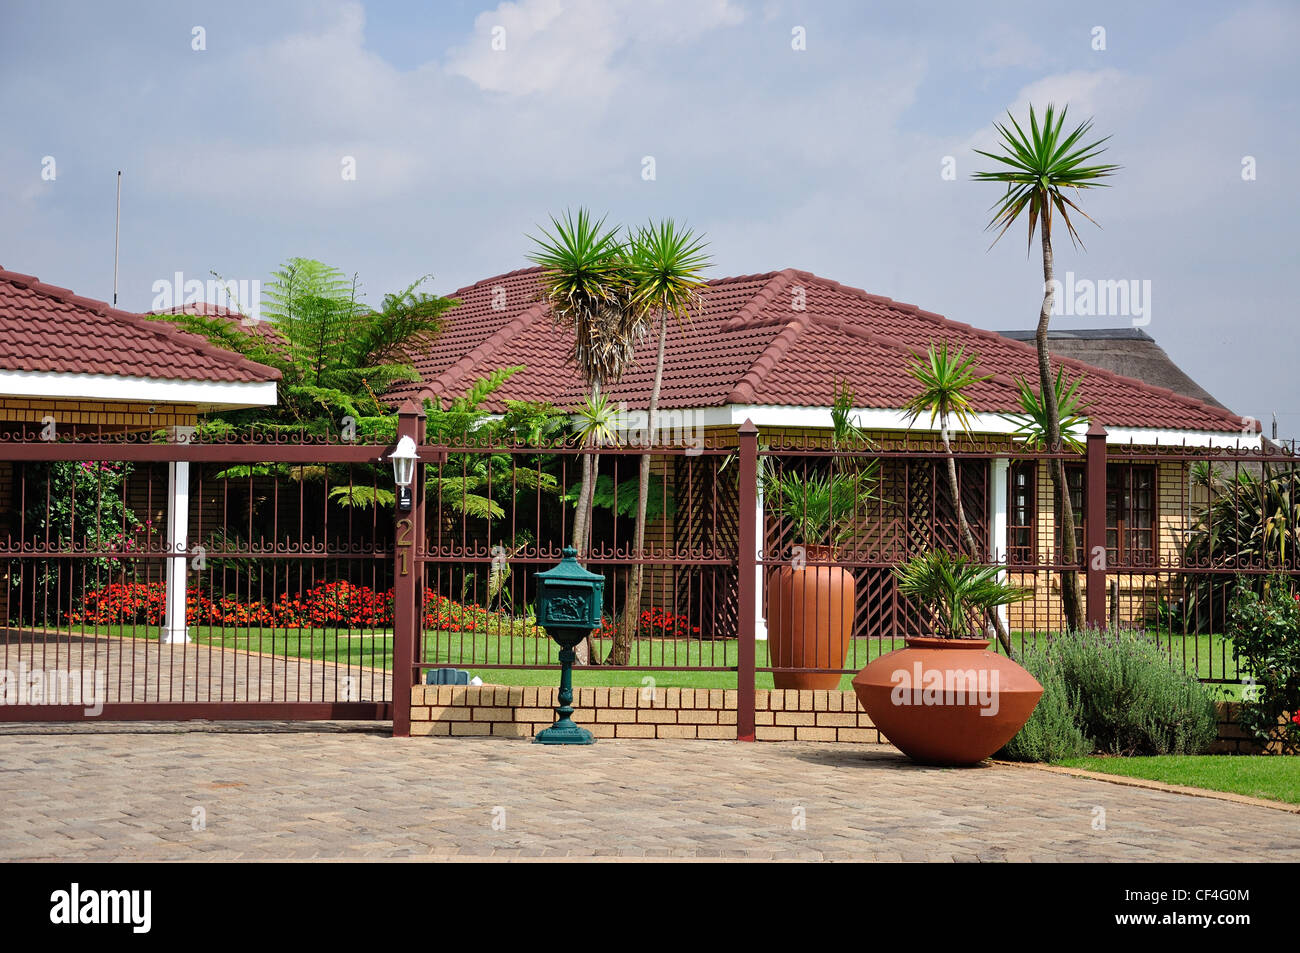 Maison typique avec barrière de sécurité, Nigel, la Province de Gauteng, Afrique du Sud Banque D'Images